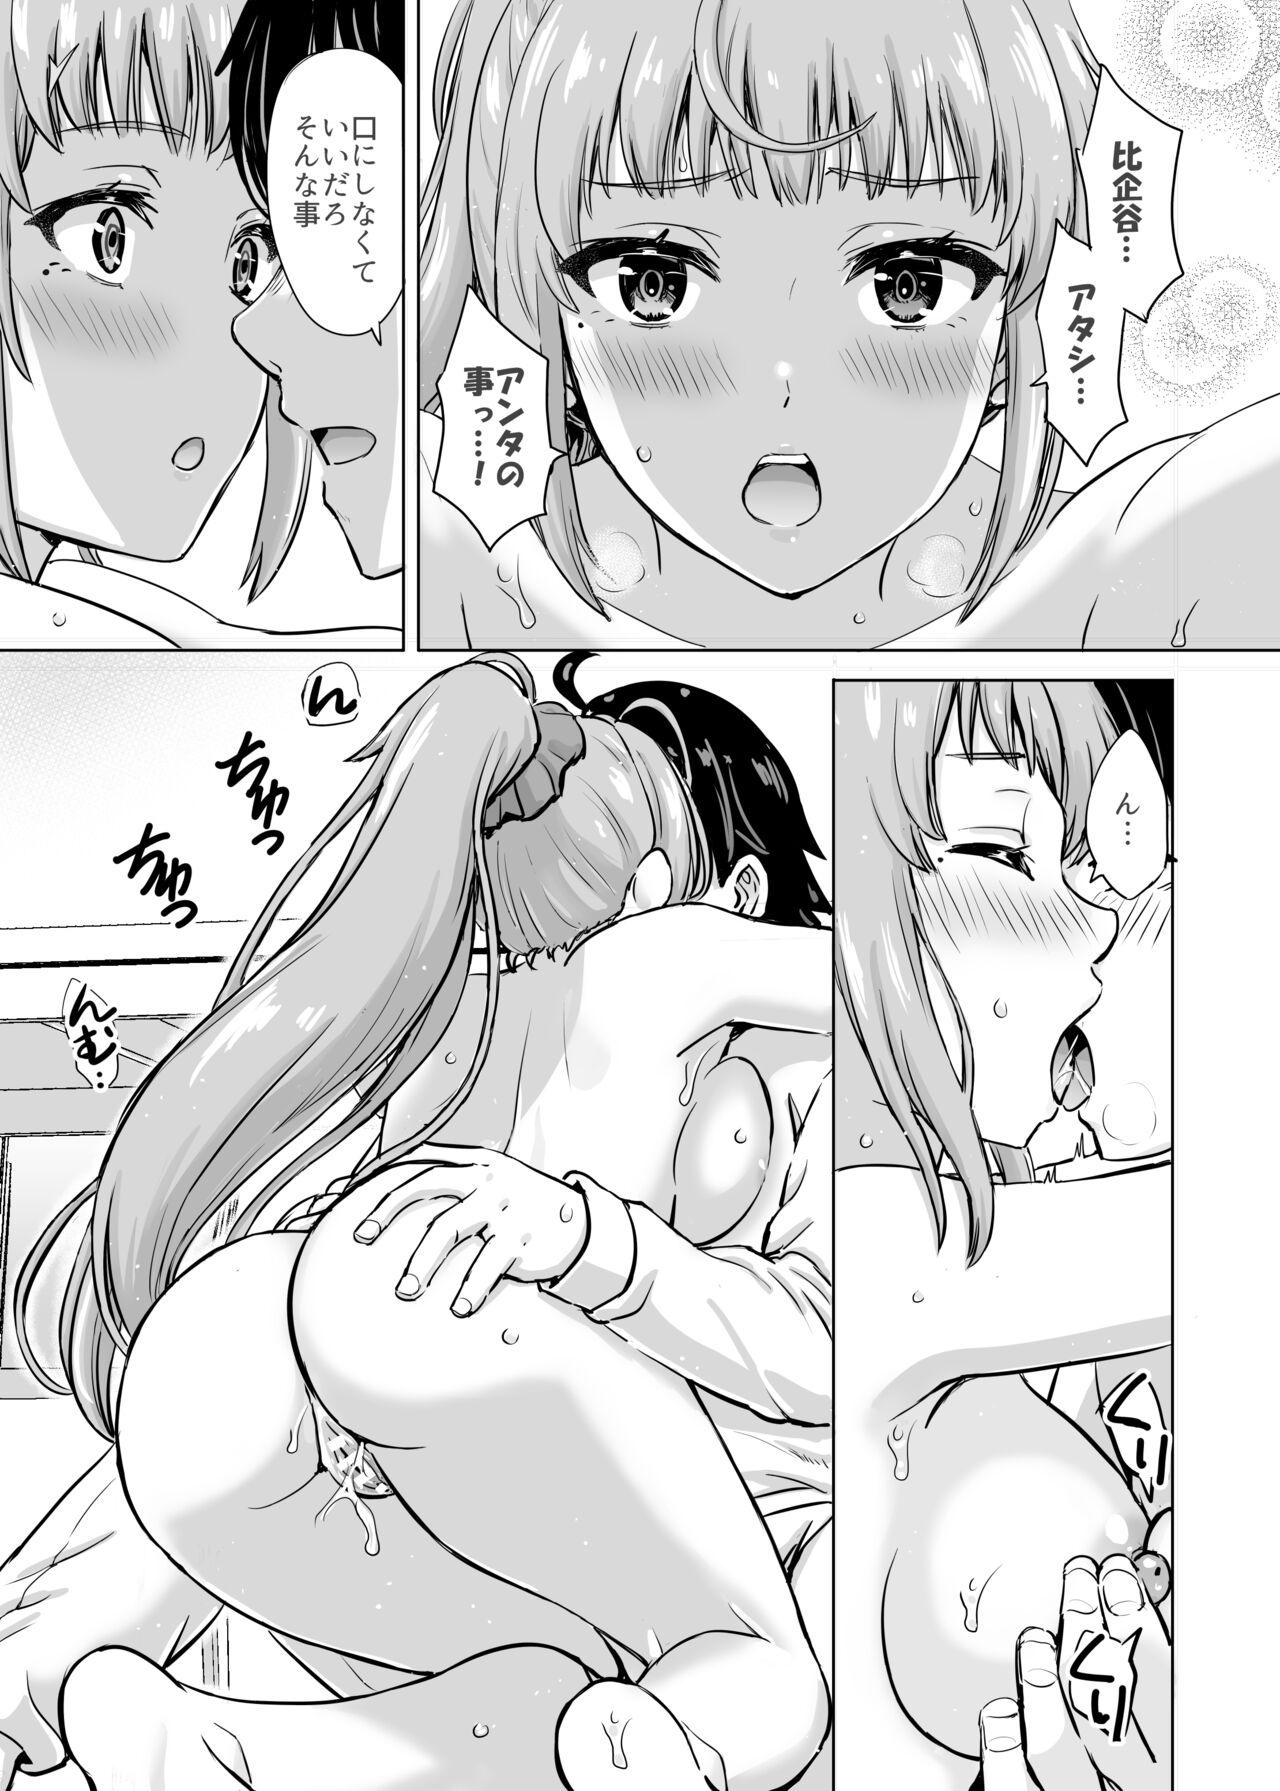 3way あーしさんサキサキ漫画 - Yahari ore no seishun love come wa machigatteiru Dad - Page 10